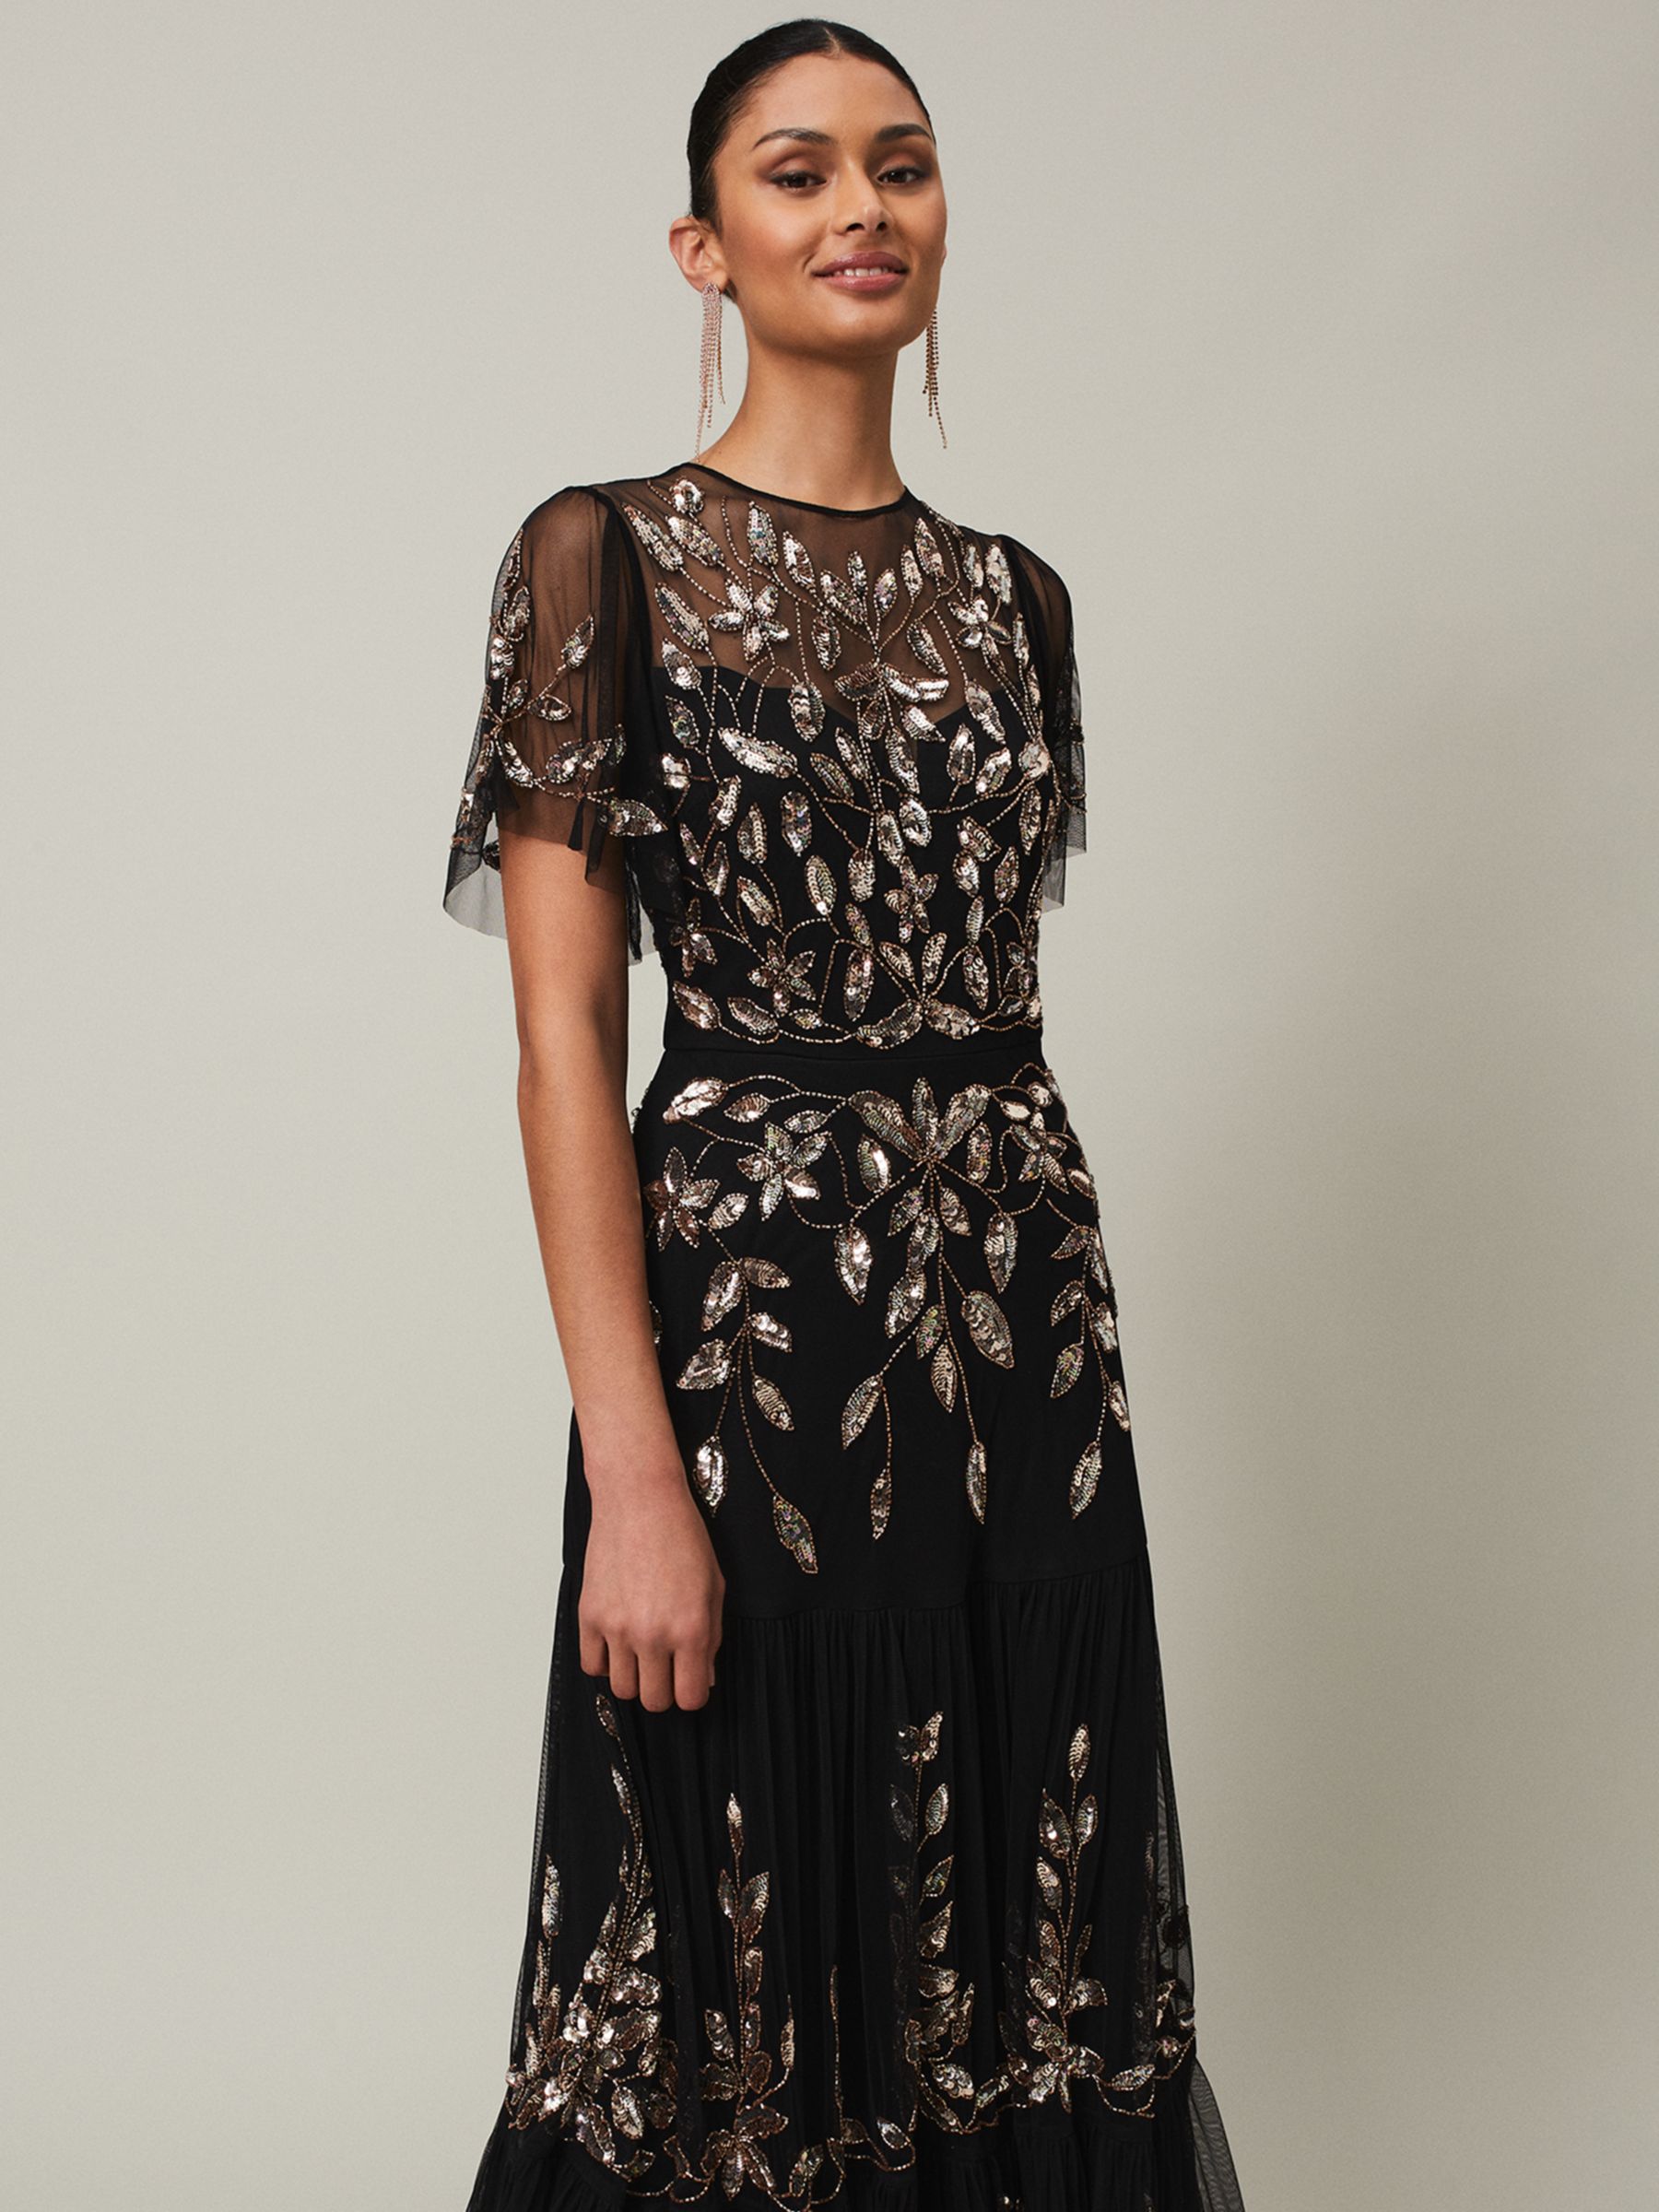 Melanie Black Lace Dress – Little Party Dress